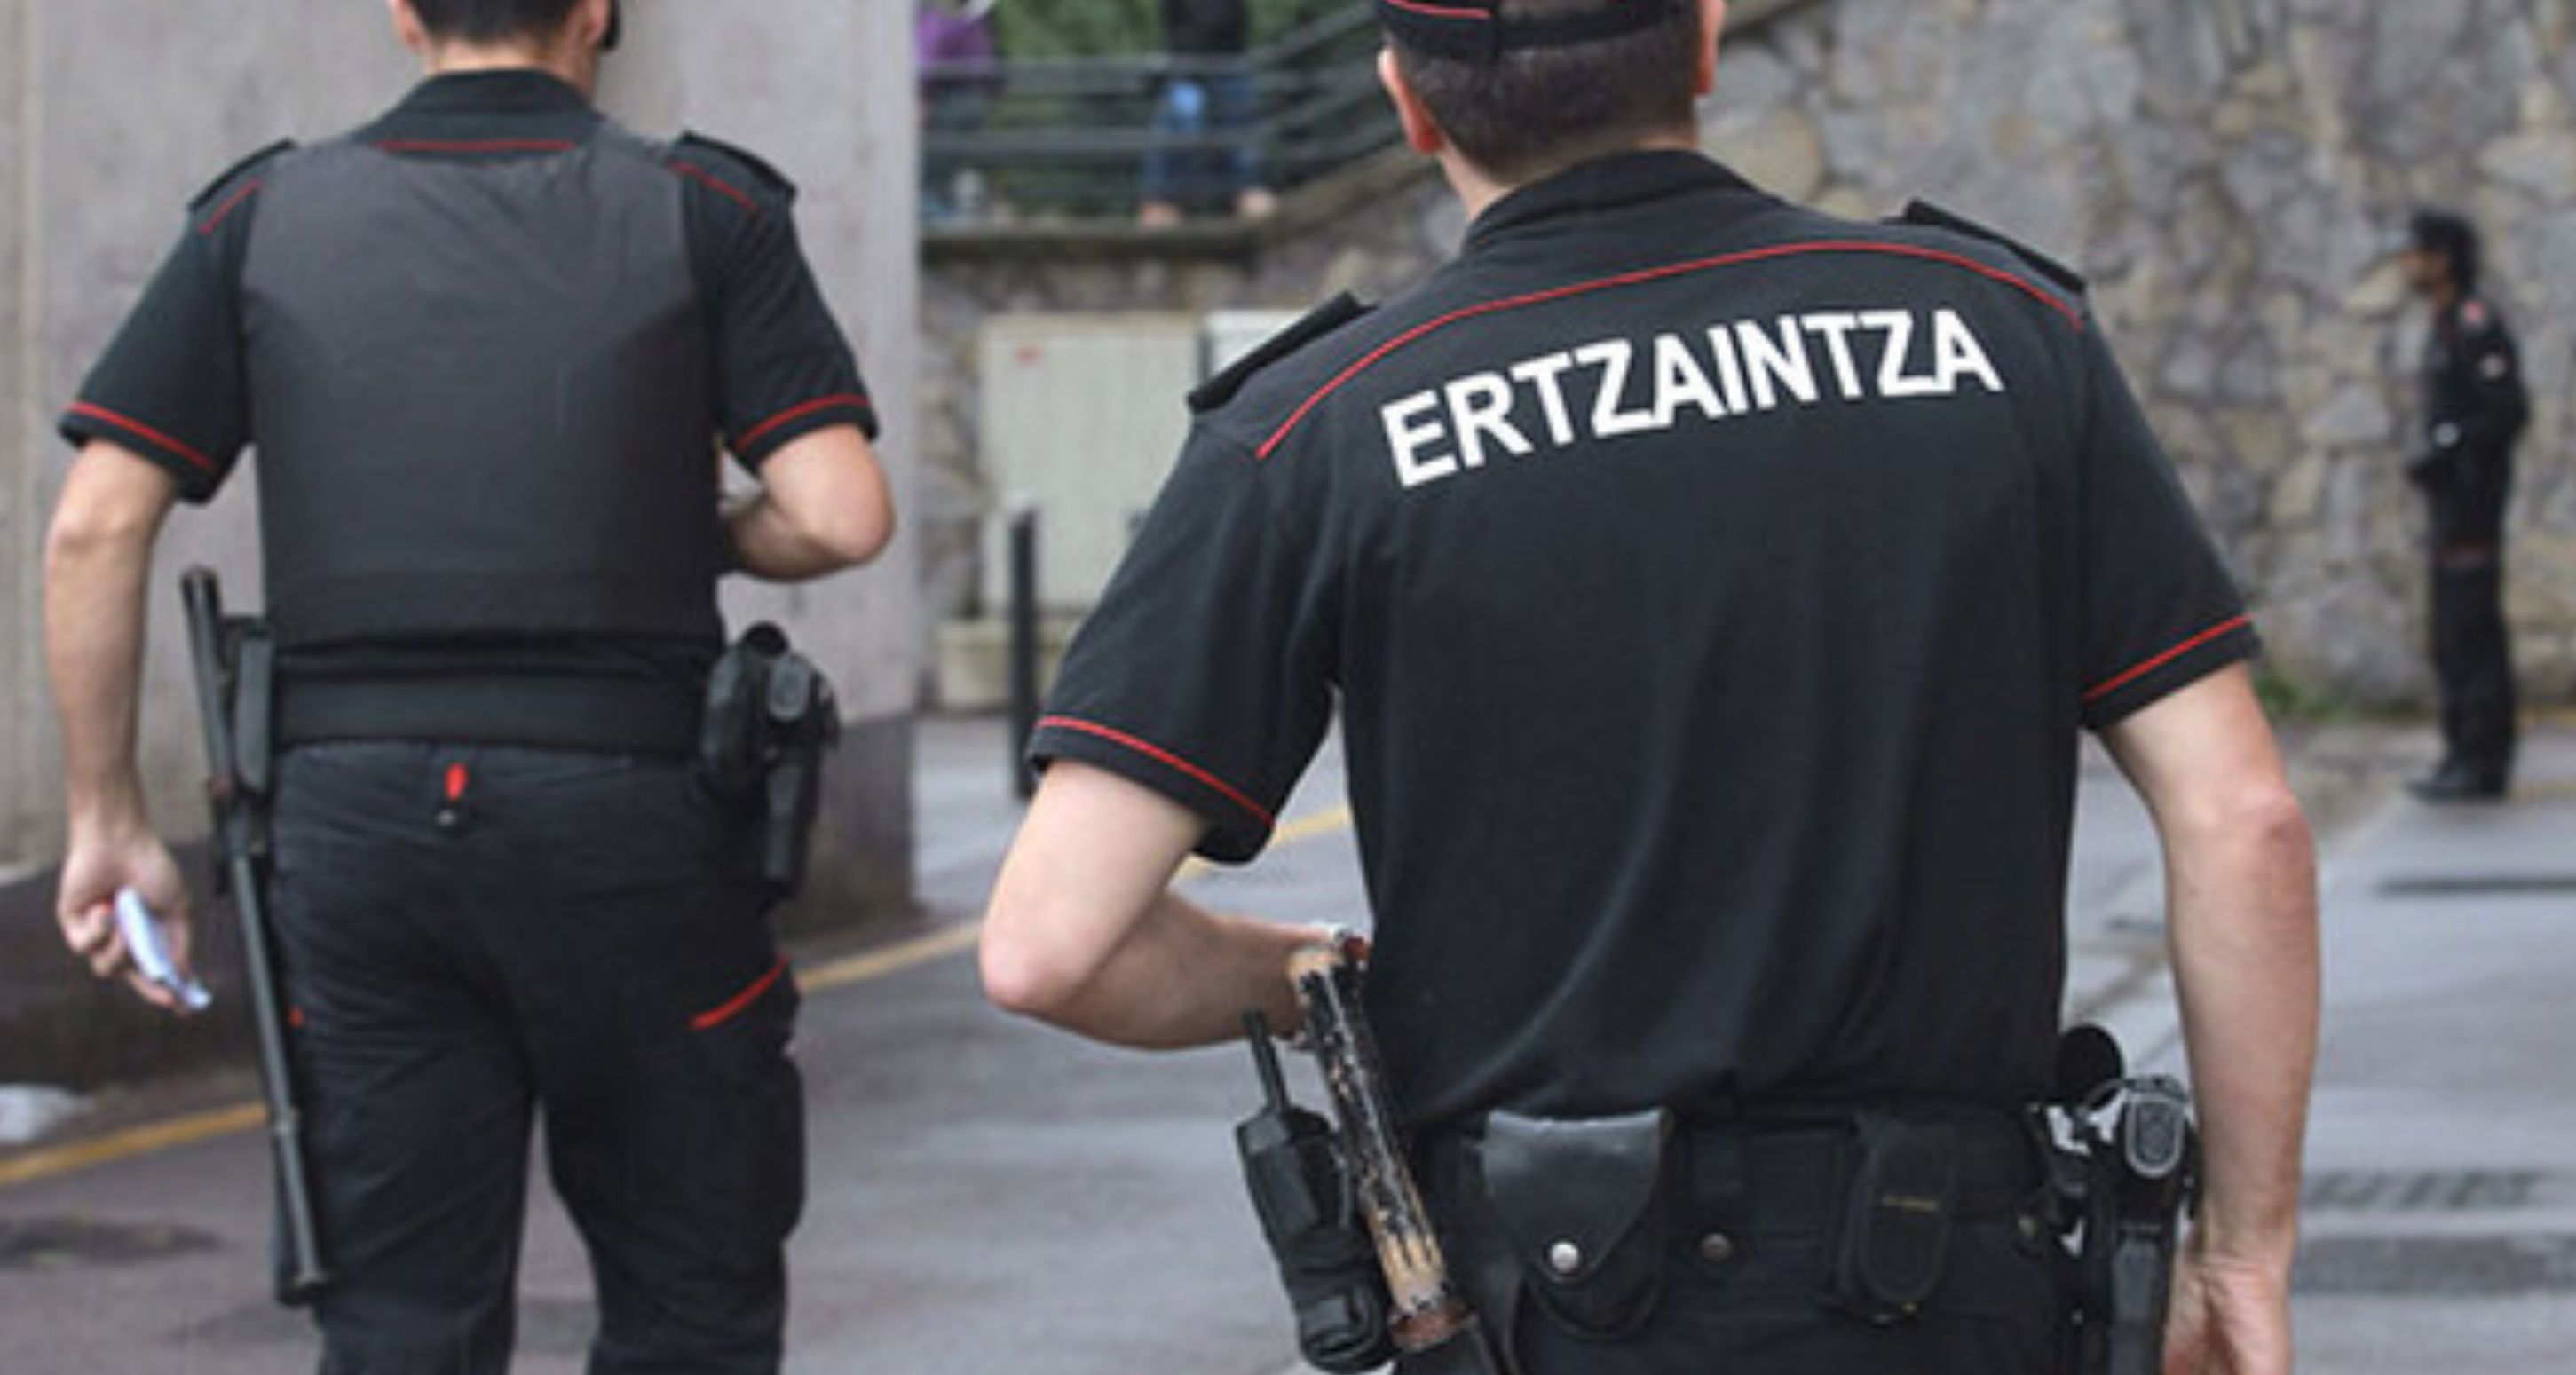 L'Ertzaintza investiga un agent denunciat per participar en les protestes contra Sánchez